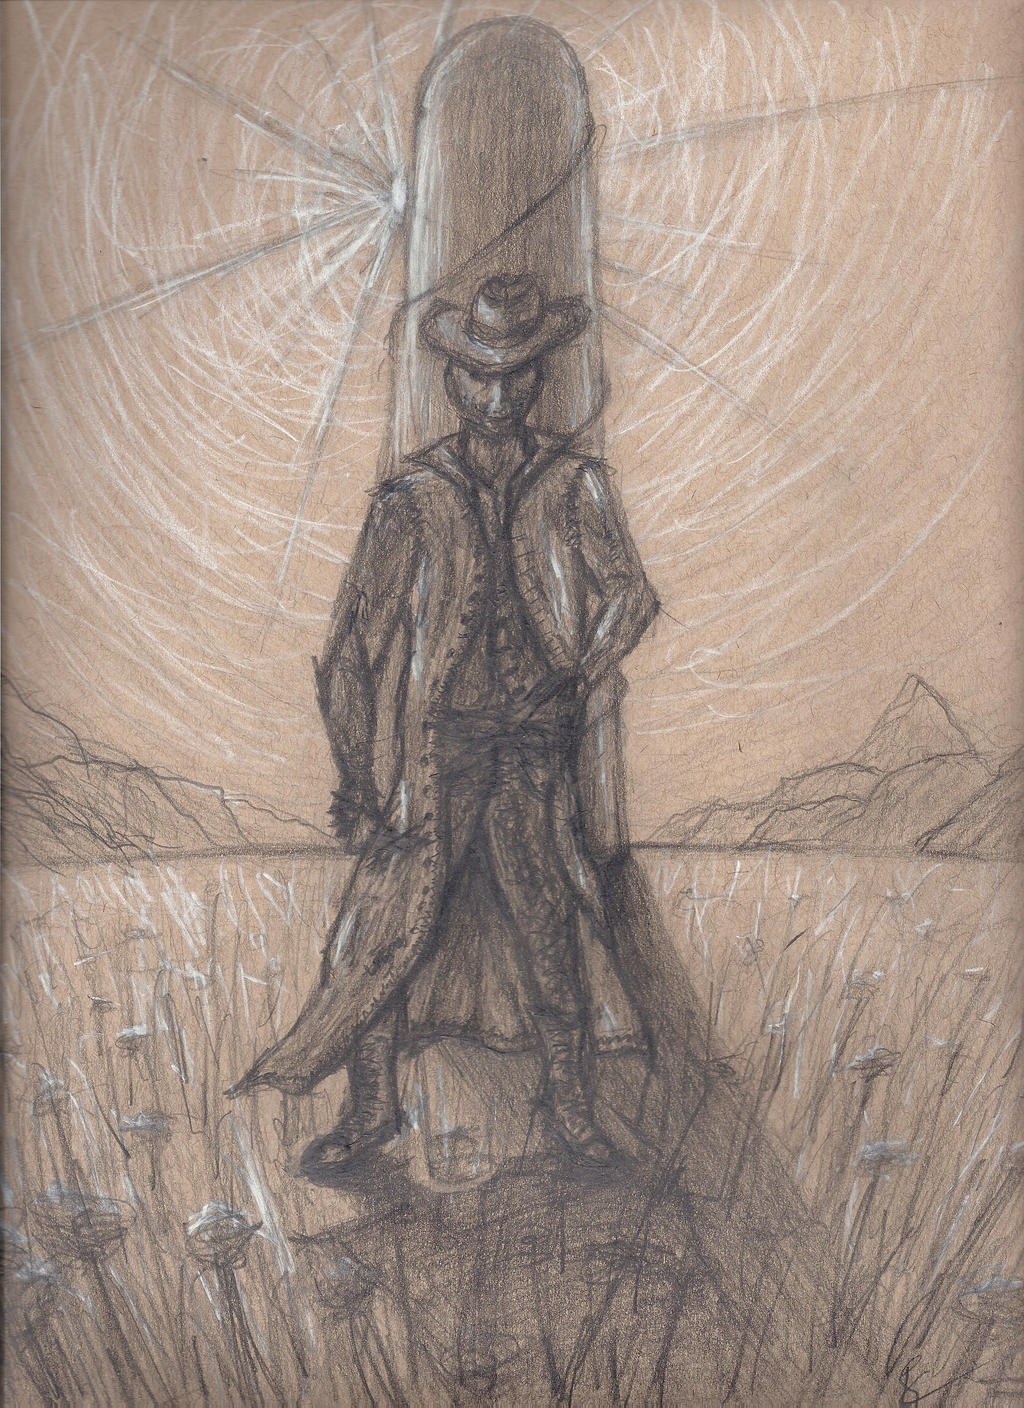 The Dark Tower: Roland Concept Sketch